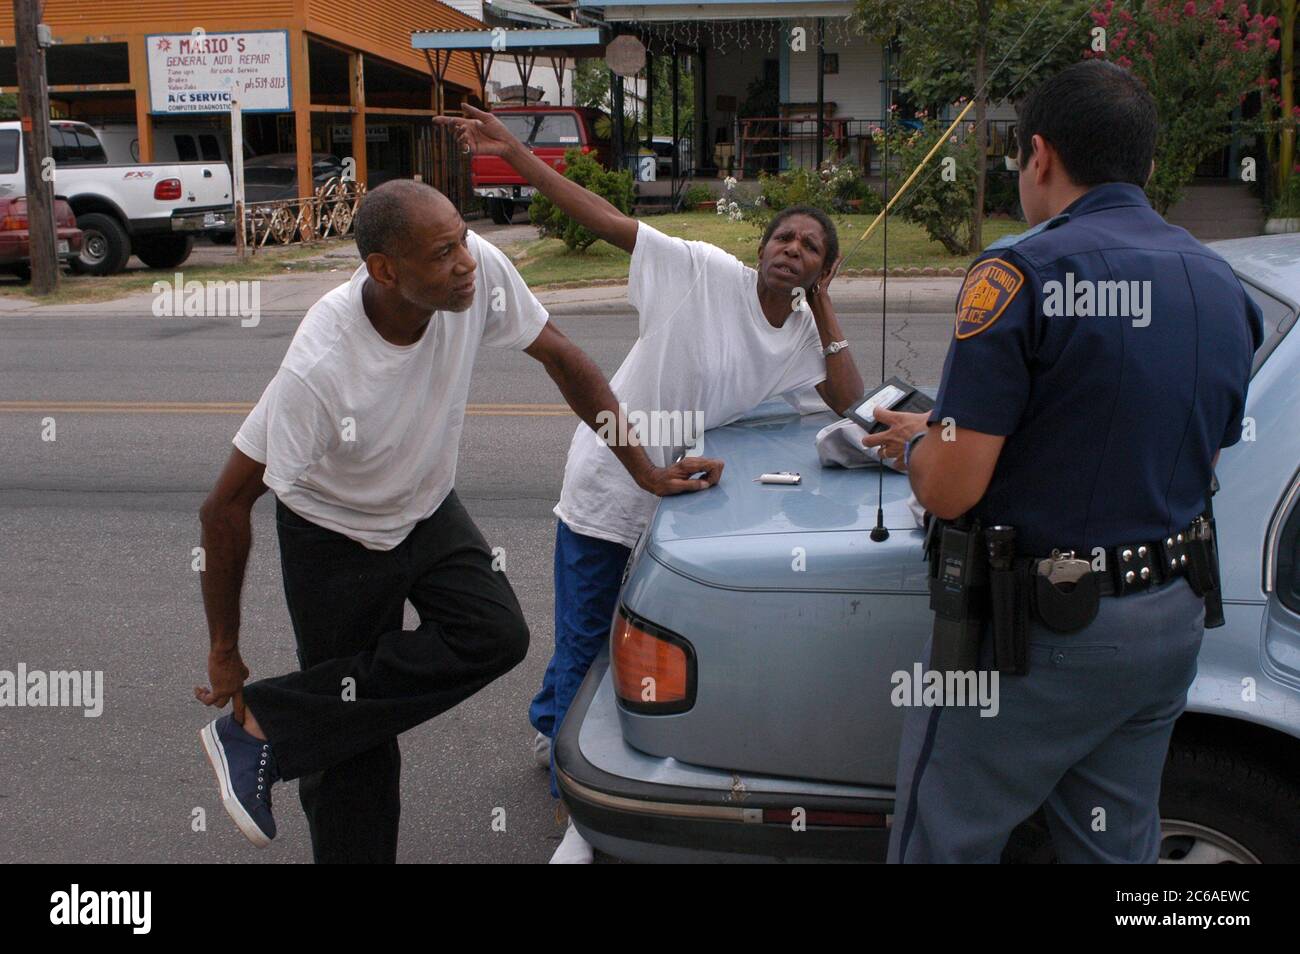 San Antonio, Texas 7-8 agosto 2003: L'ufficiale Joe Rios parla con due residenti si è fermato e cercato quando un tubo fumatore è stato trovato nella loro auto. Sono stati rilasciati. Nessuna versione del modello. ©Bob Daemmrich Foto Stock